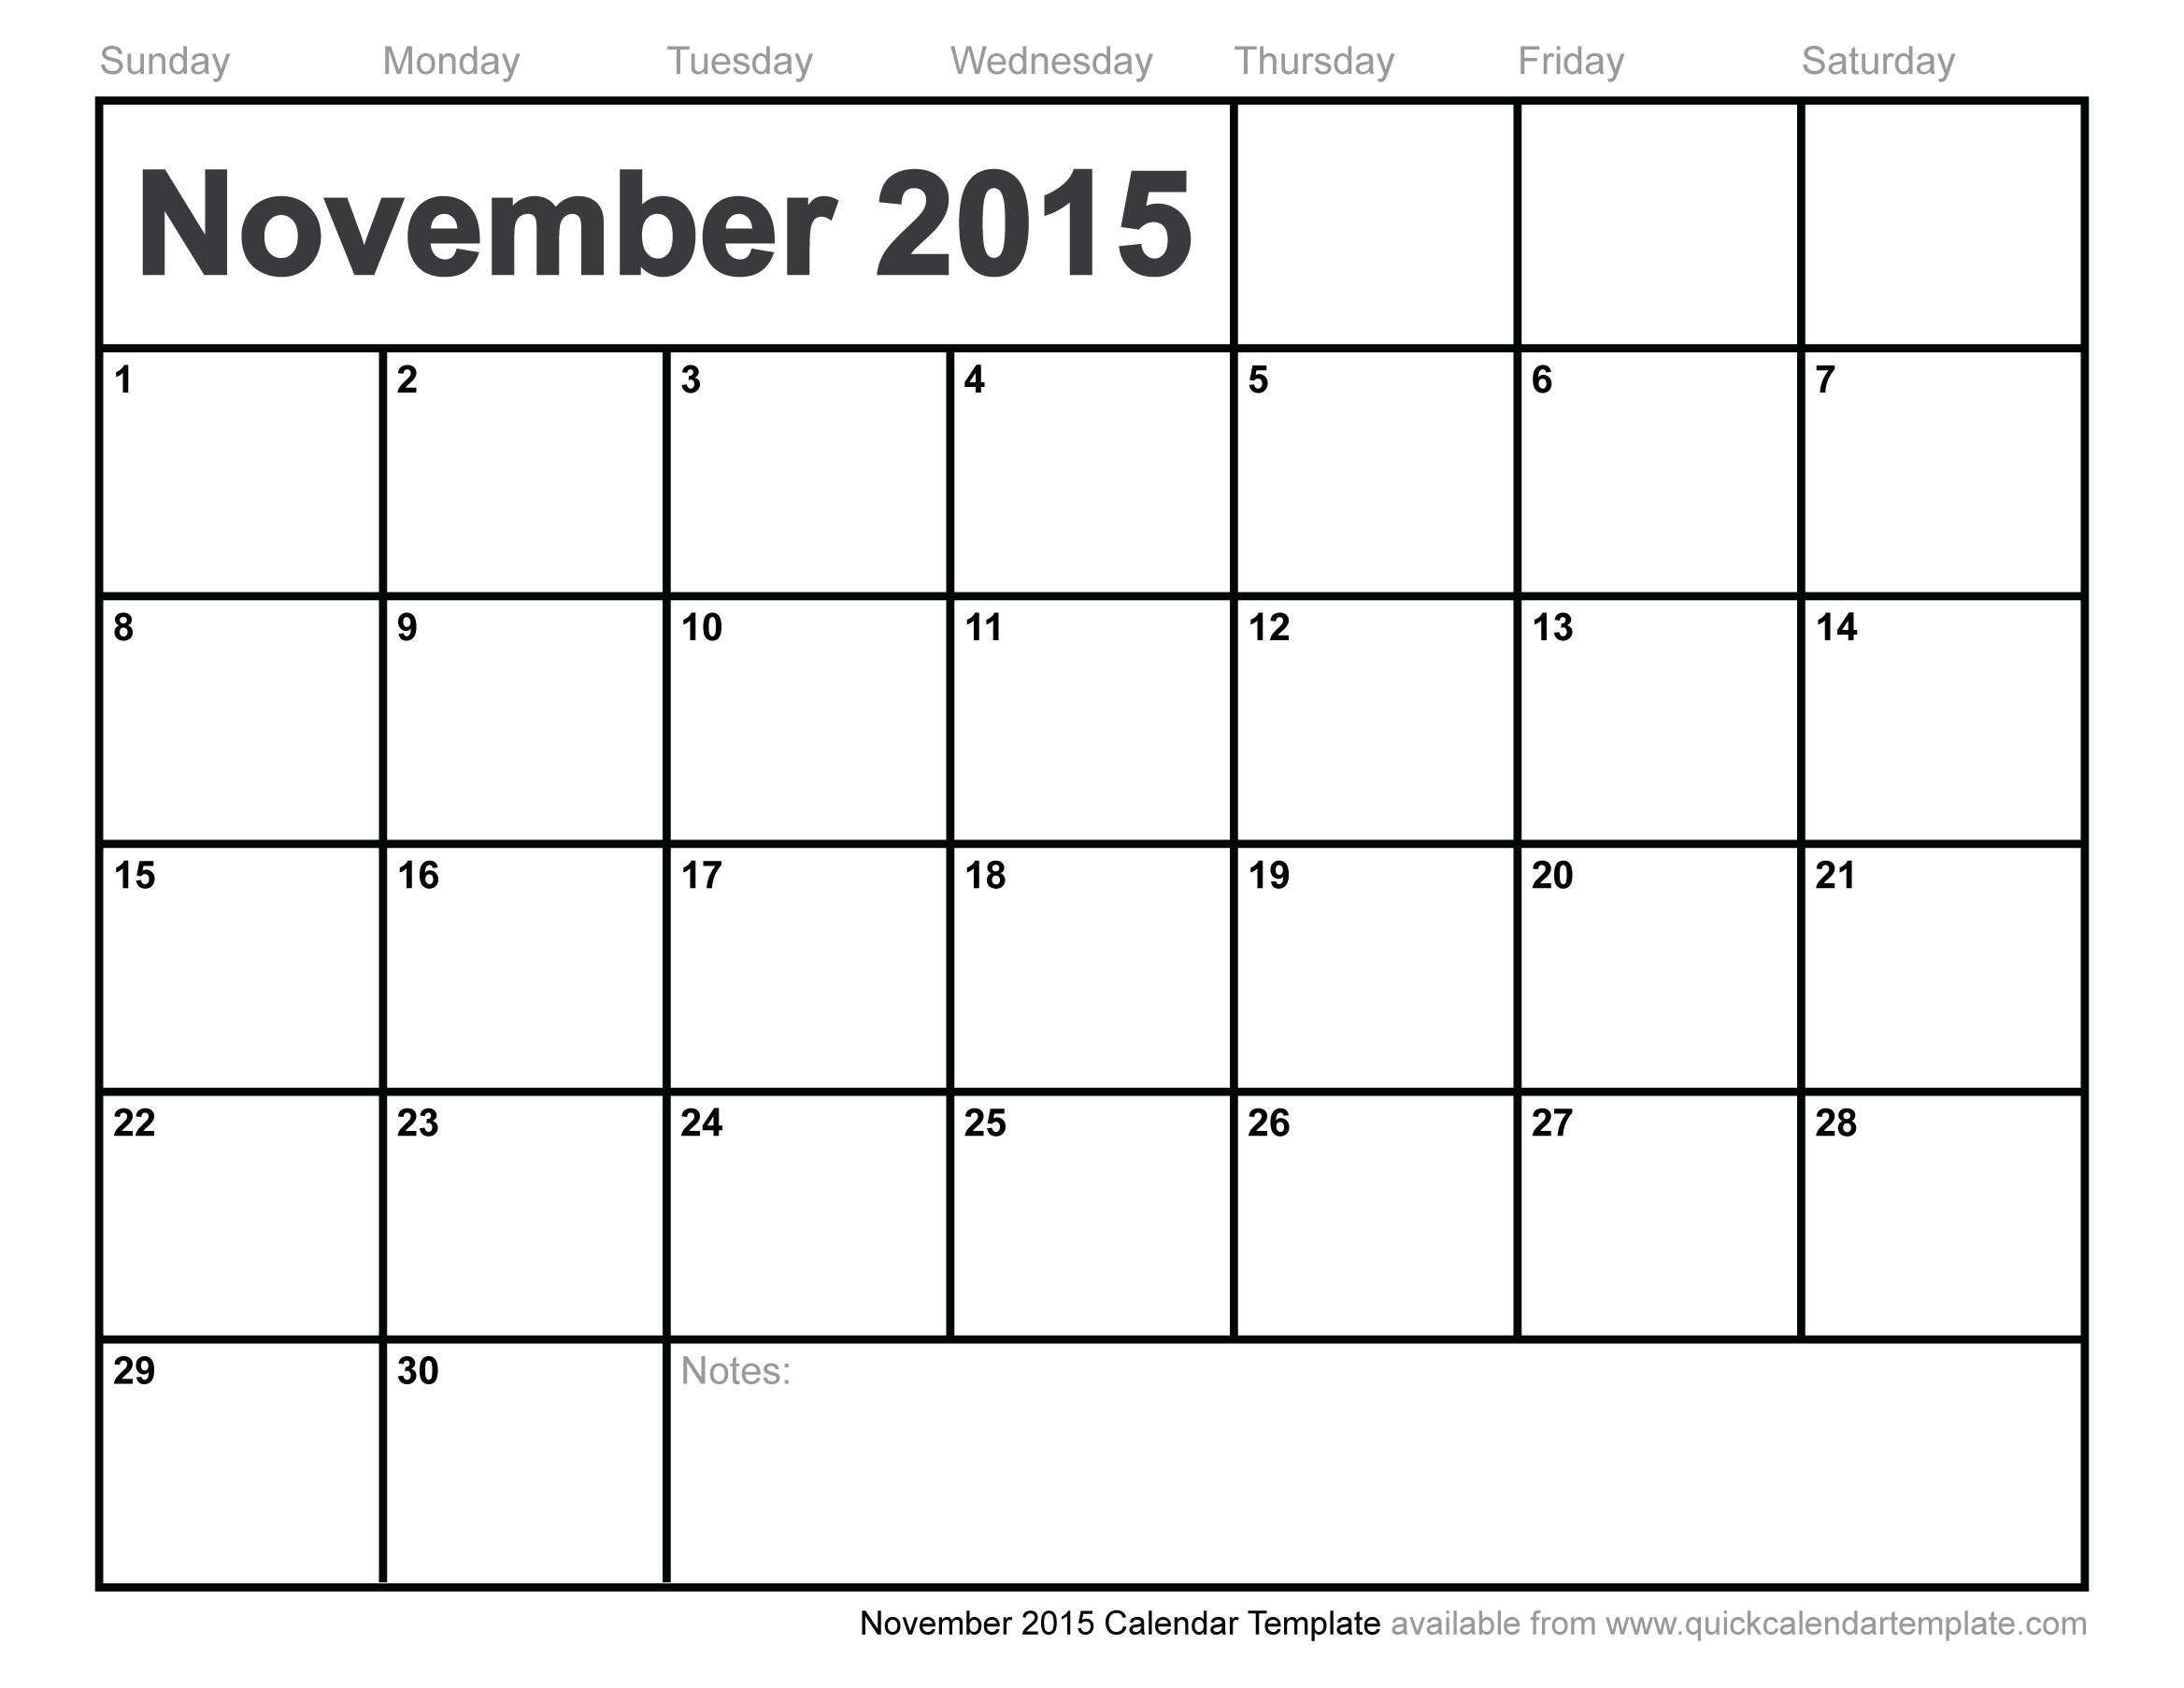 Print Calendar Month November 2015 | Julian Date To Calendar Date throughout Calendar By Month To Print